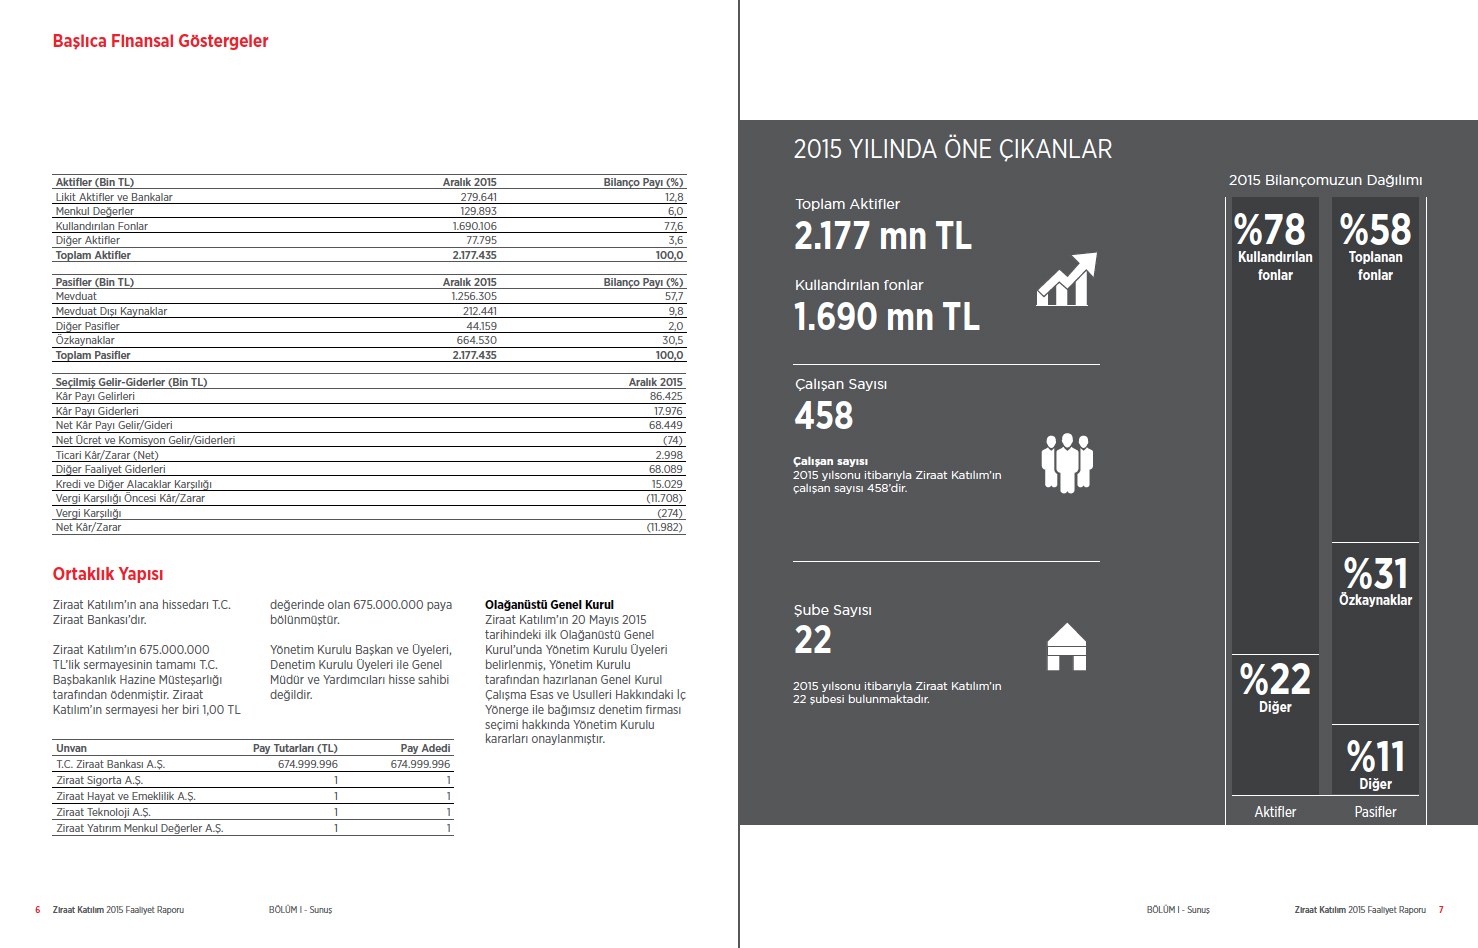 ZİRAAT KATILIM / 2015 Faaliyet Raporu / 2015 Annual Report